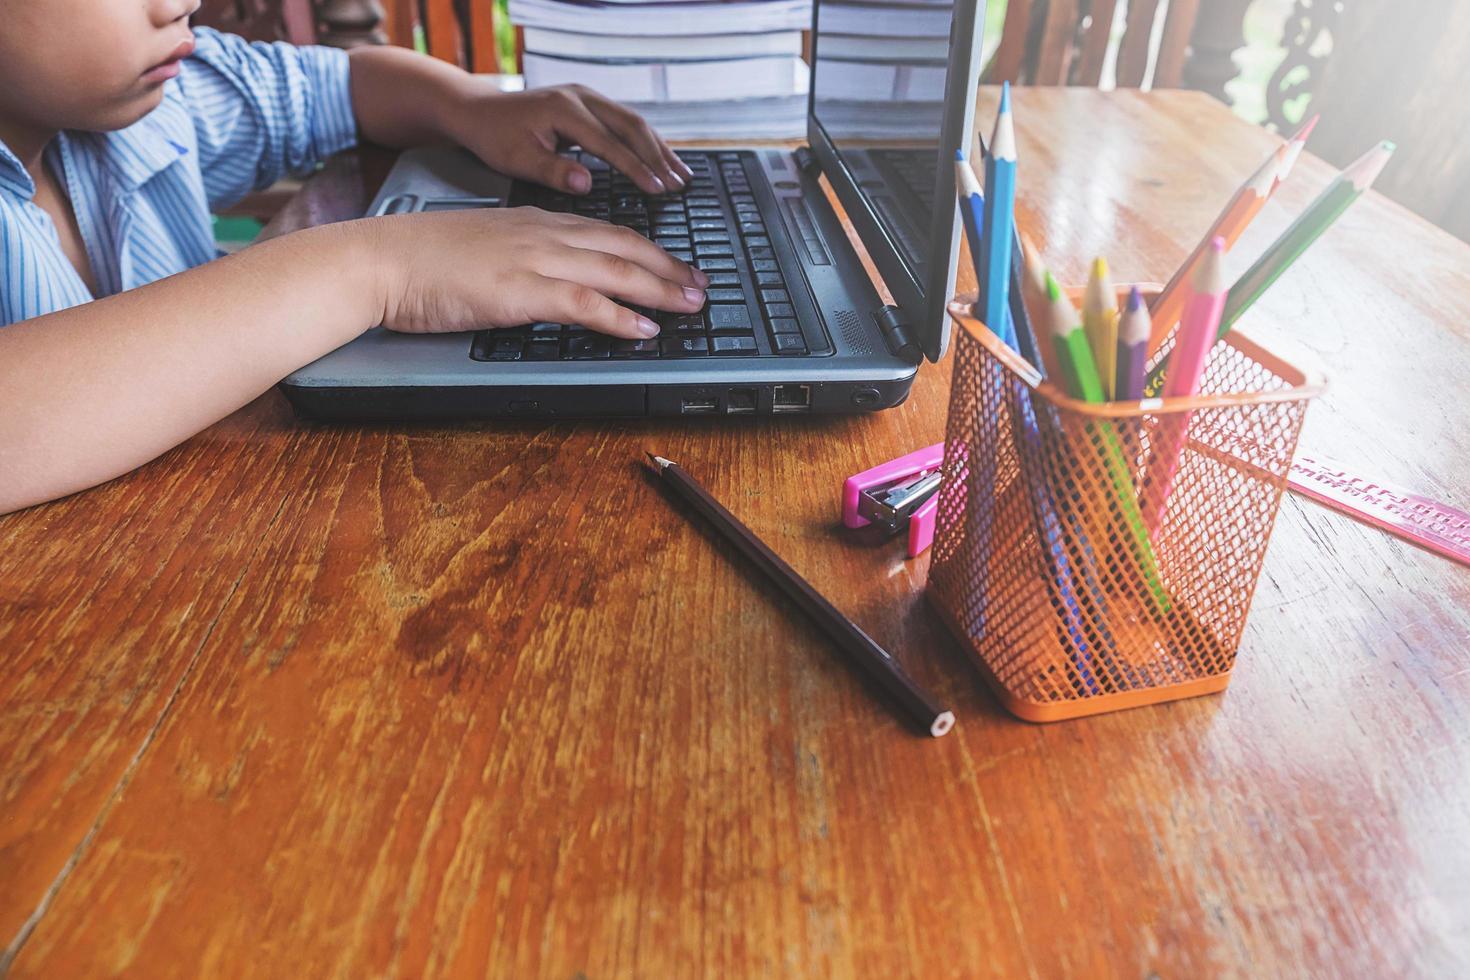 Garçon travaillant sur un ordinateur portable à côté d'une tasse de crayons sur un bureau en bois photo